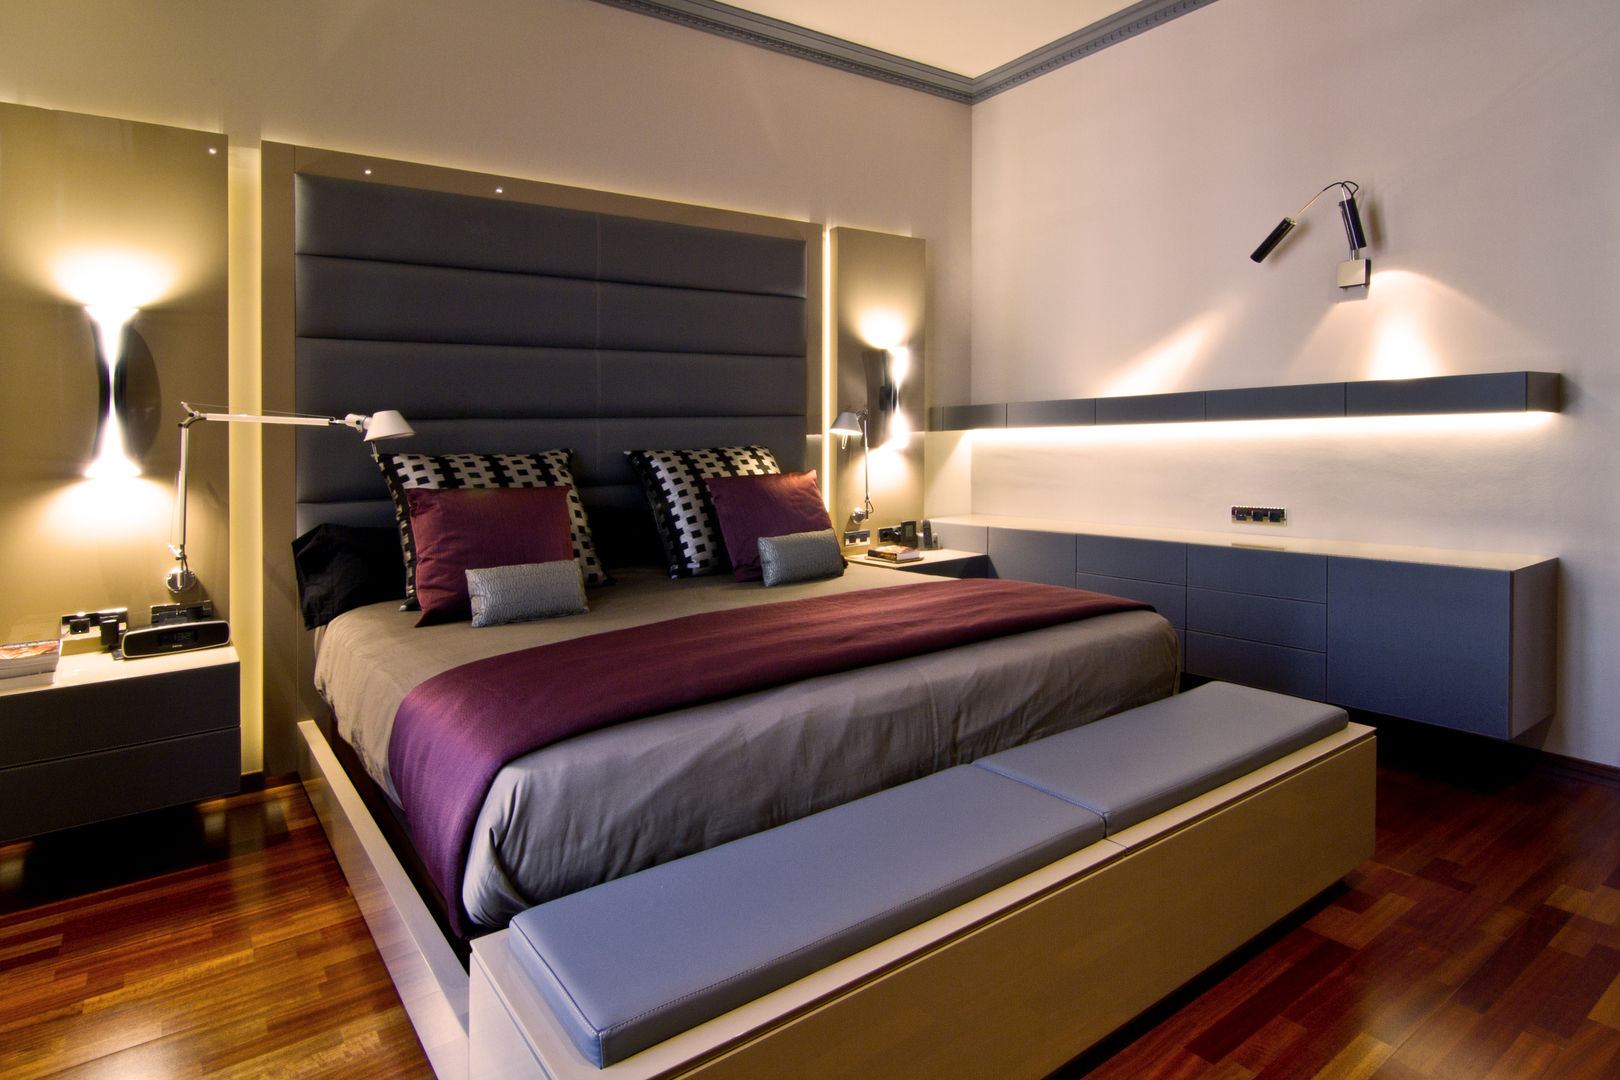 Vivienda de Estilo Neoclásico en la calle Caspe de Barcelona MANUEL TORRES DESIGN Dormitorios de estilo moderno